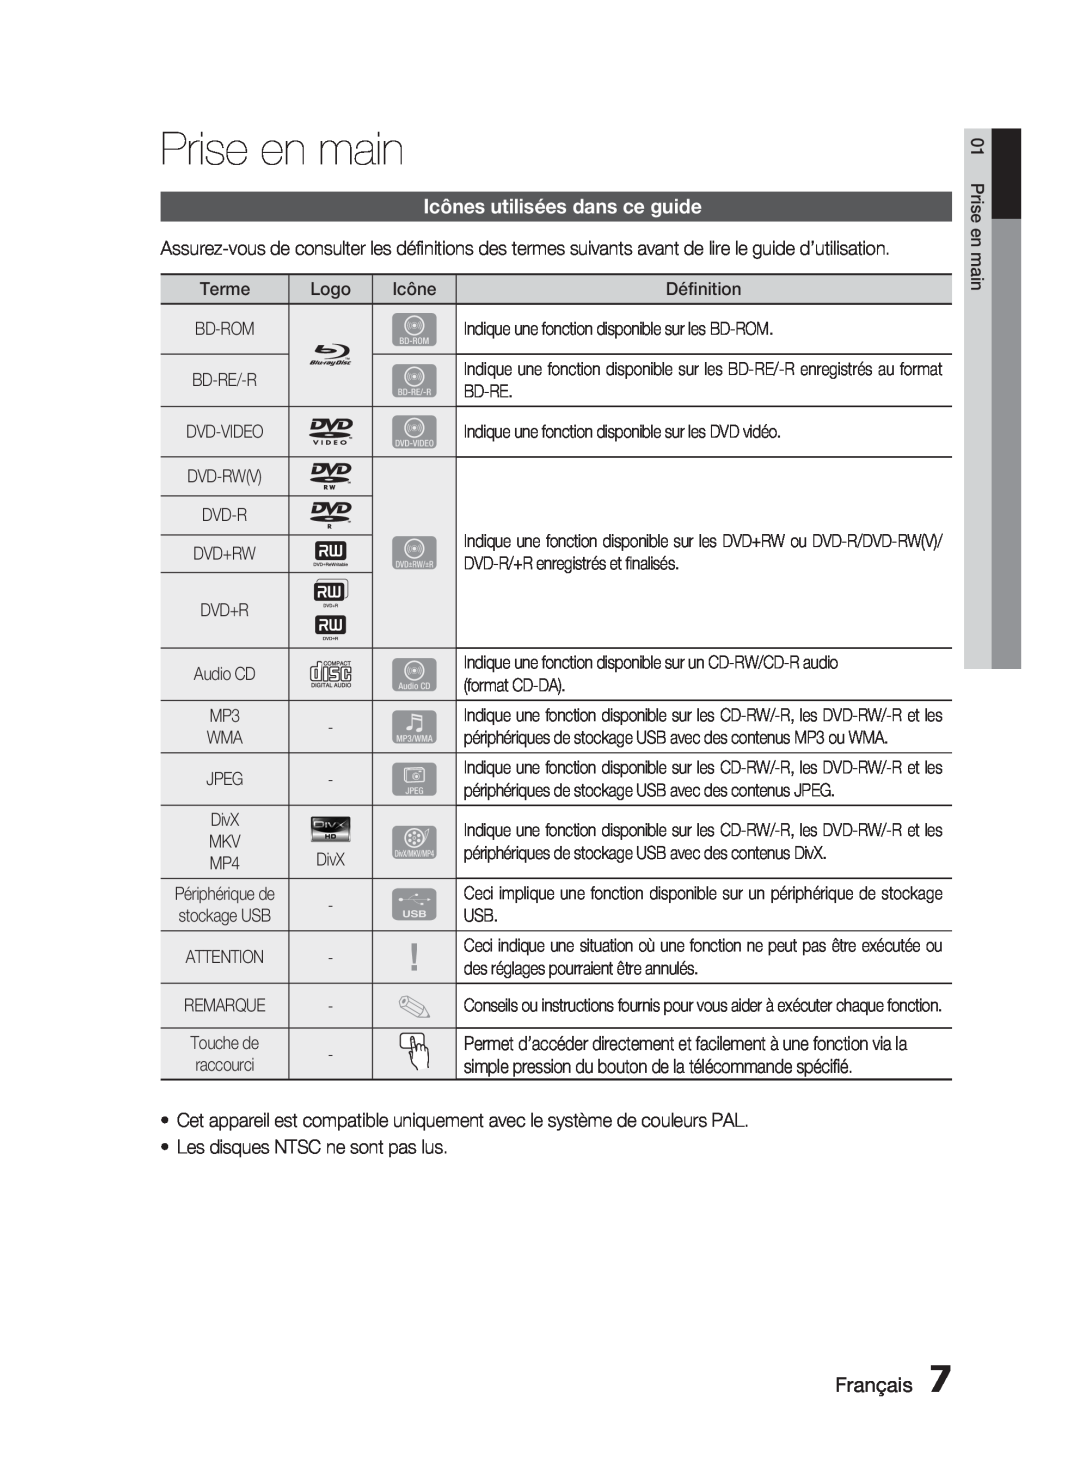 Samsung HT-C6200/XEF manual Prise en main, Icônes utilisées dans ce guide, Français 